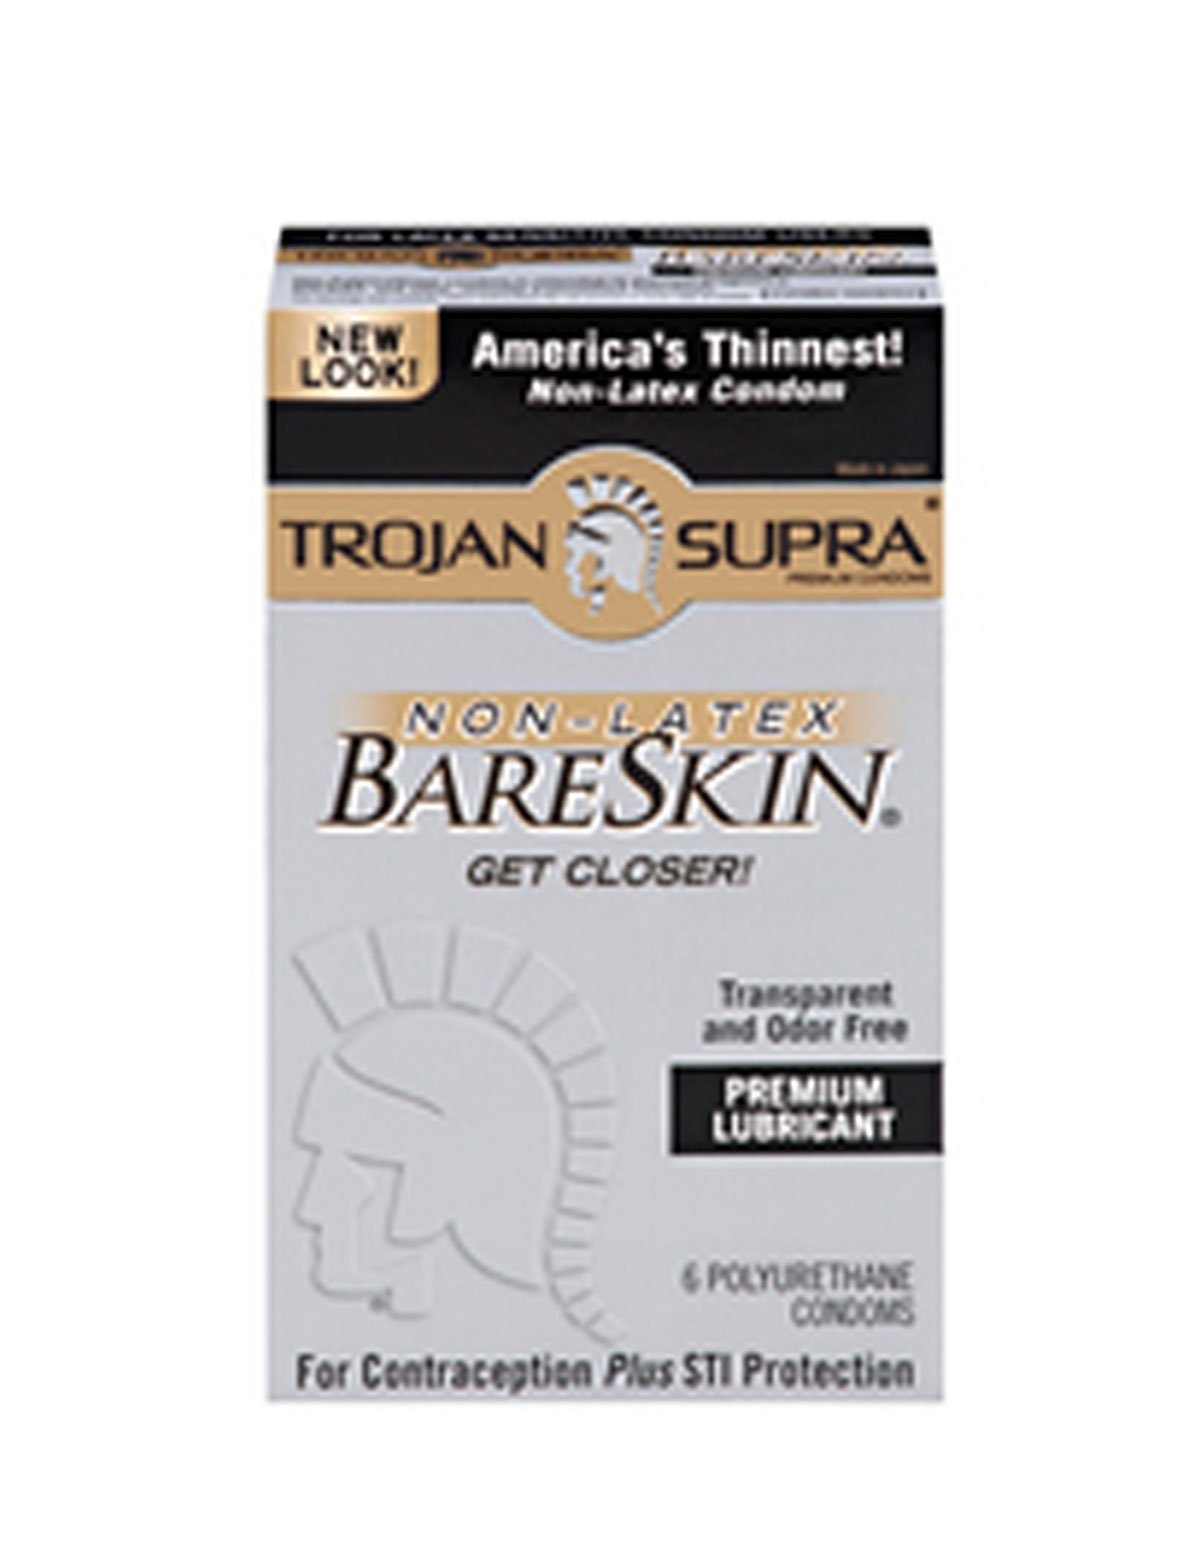 alternate image for Trojan Supra Bareskin Condoms 6 Pack